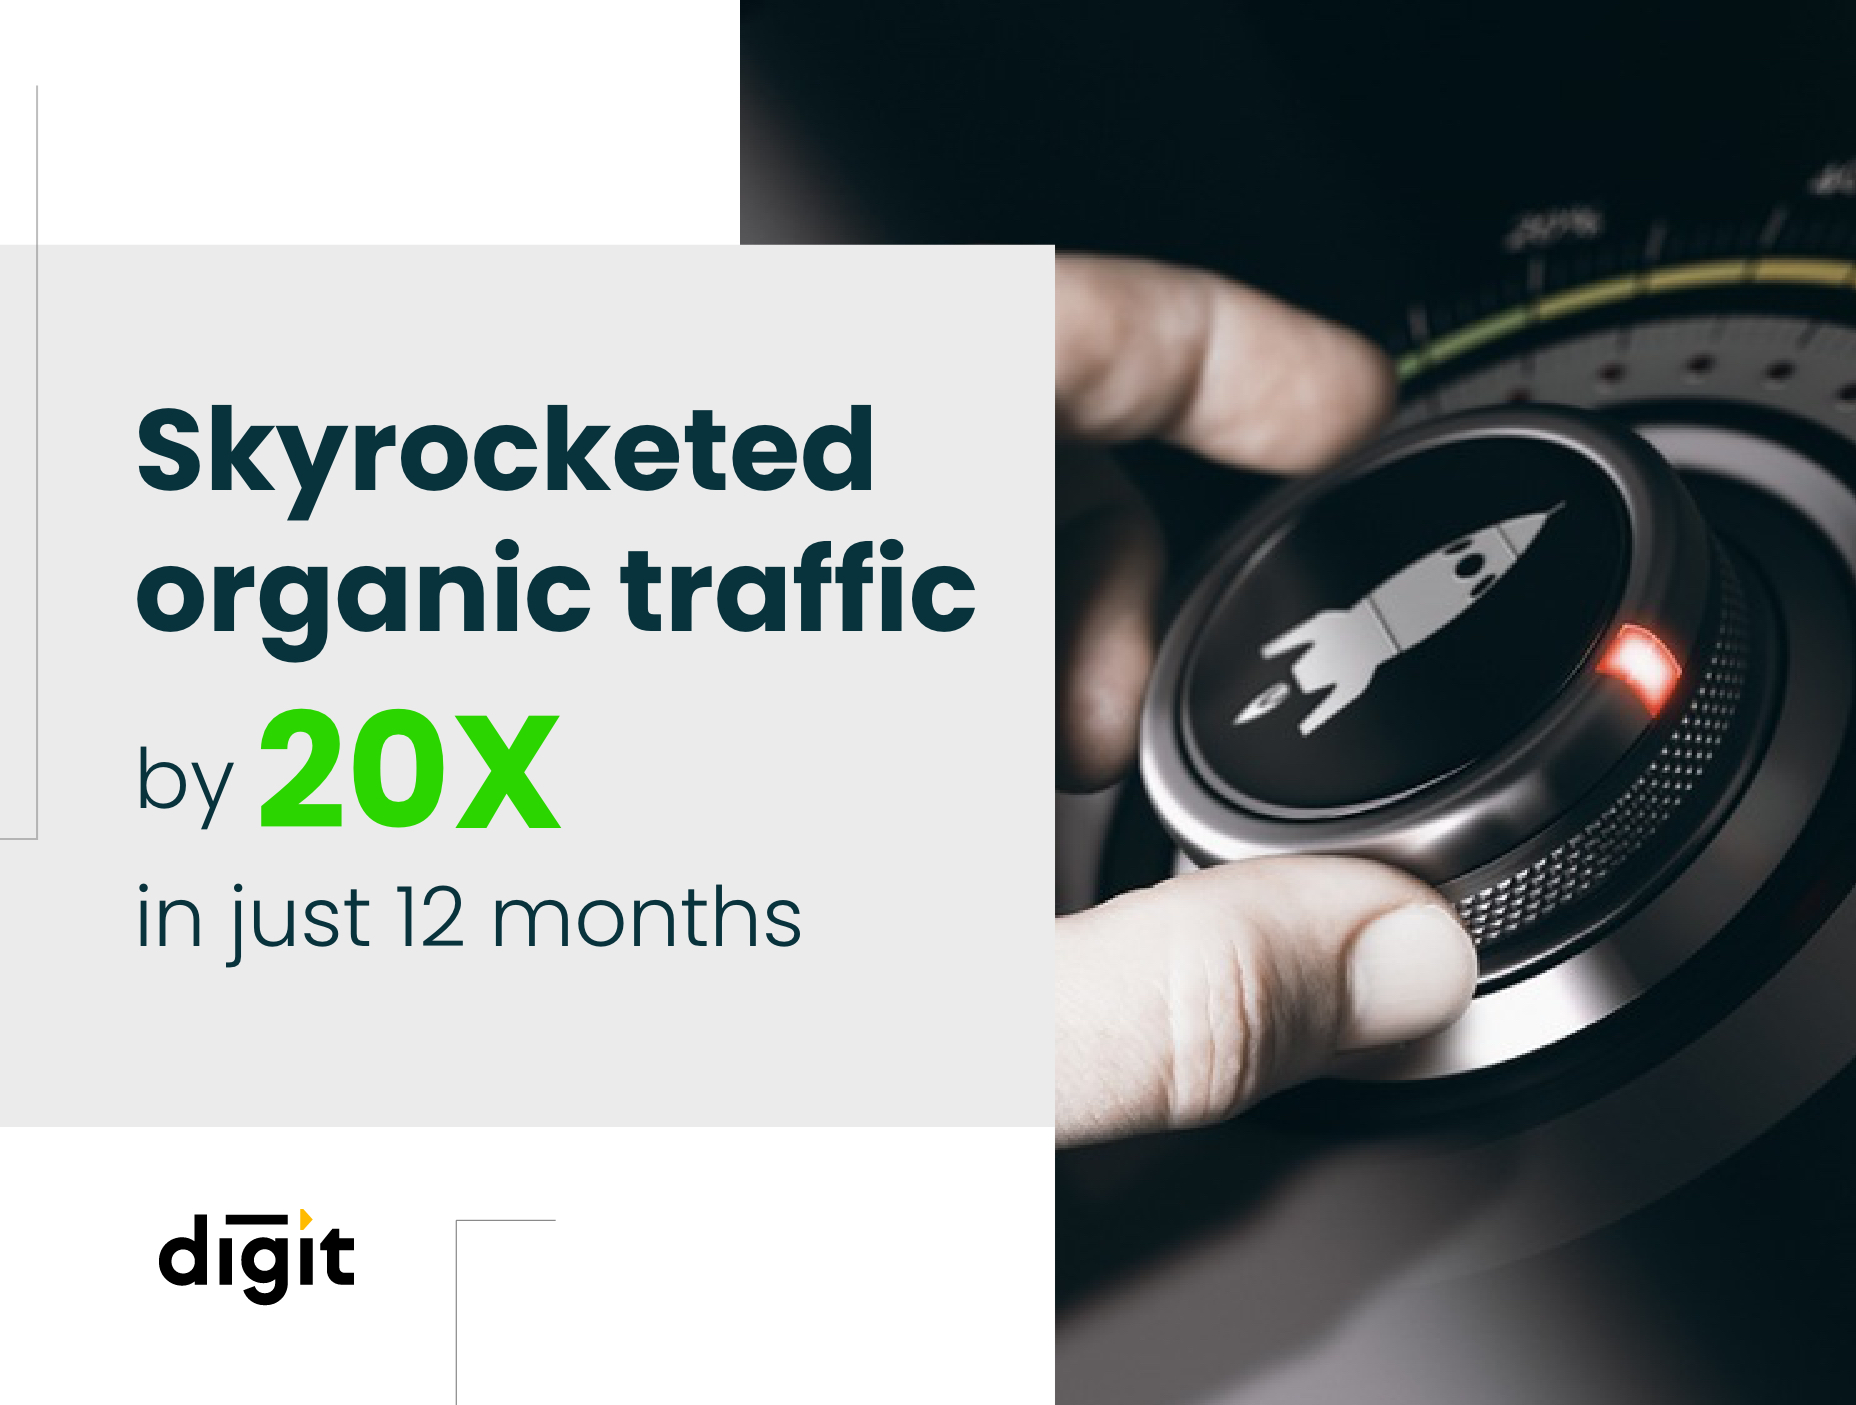 Case study of 20X organic traffic growth by digital marketing company Noboru World